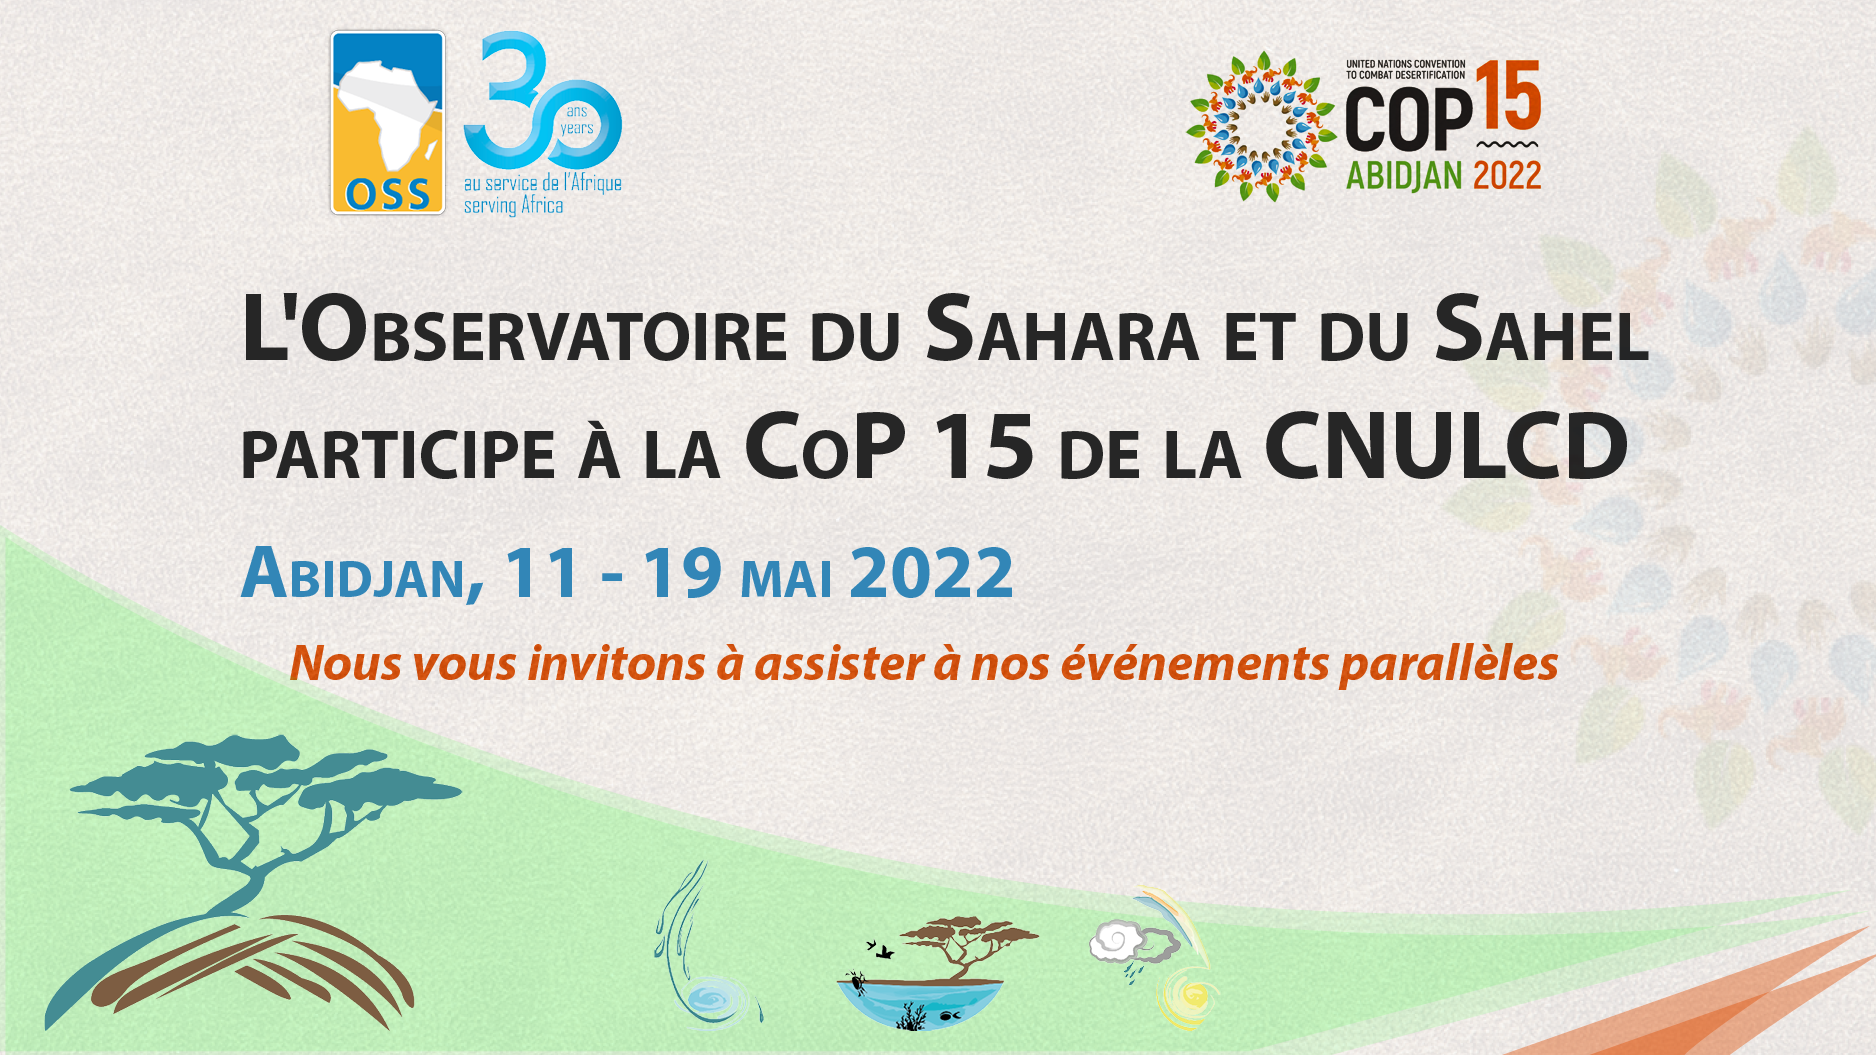  L’Observatoire du Sahara et du Sahel participe à la 15e session de la Conférence des Parties (COP15) de la Convention des Nations Unies sur la Lutte contre la Désertification - Abidjan - Côte d’Ivoire, 11 - 19 mai 2022